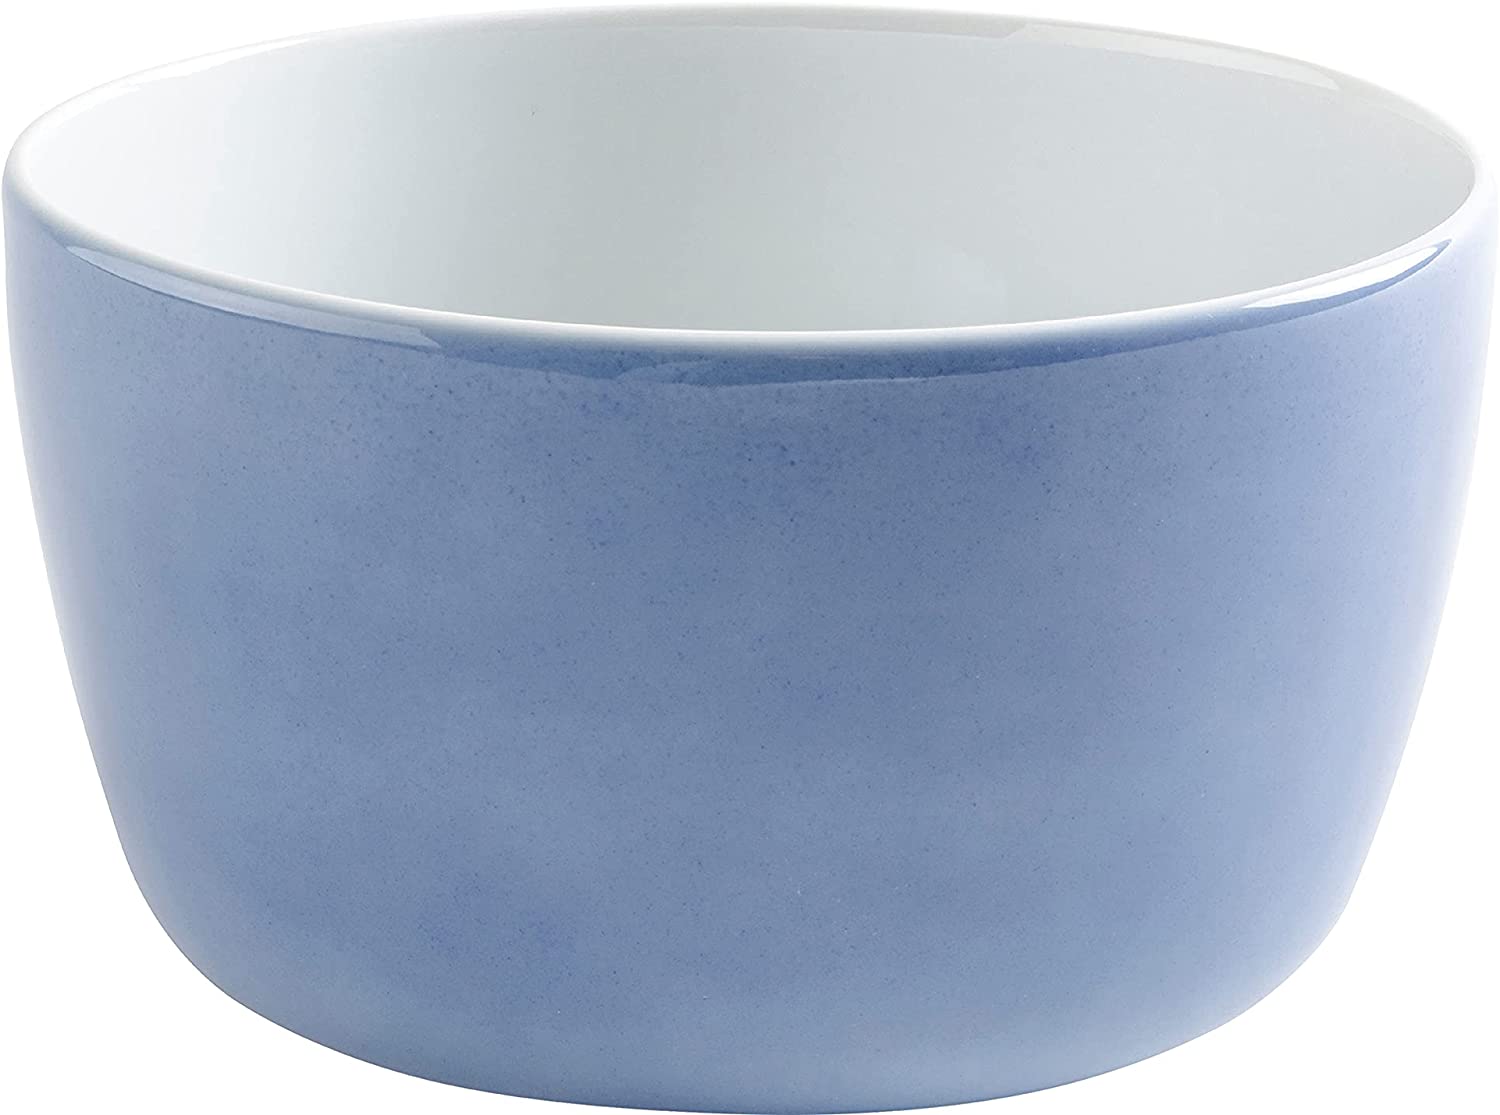 Kahla Magic Grip Five Senses Medium-Dish, Motif: Wild Flower, Watercolour / Blue, Porcelain, 19 cm, 392948A69357C MG